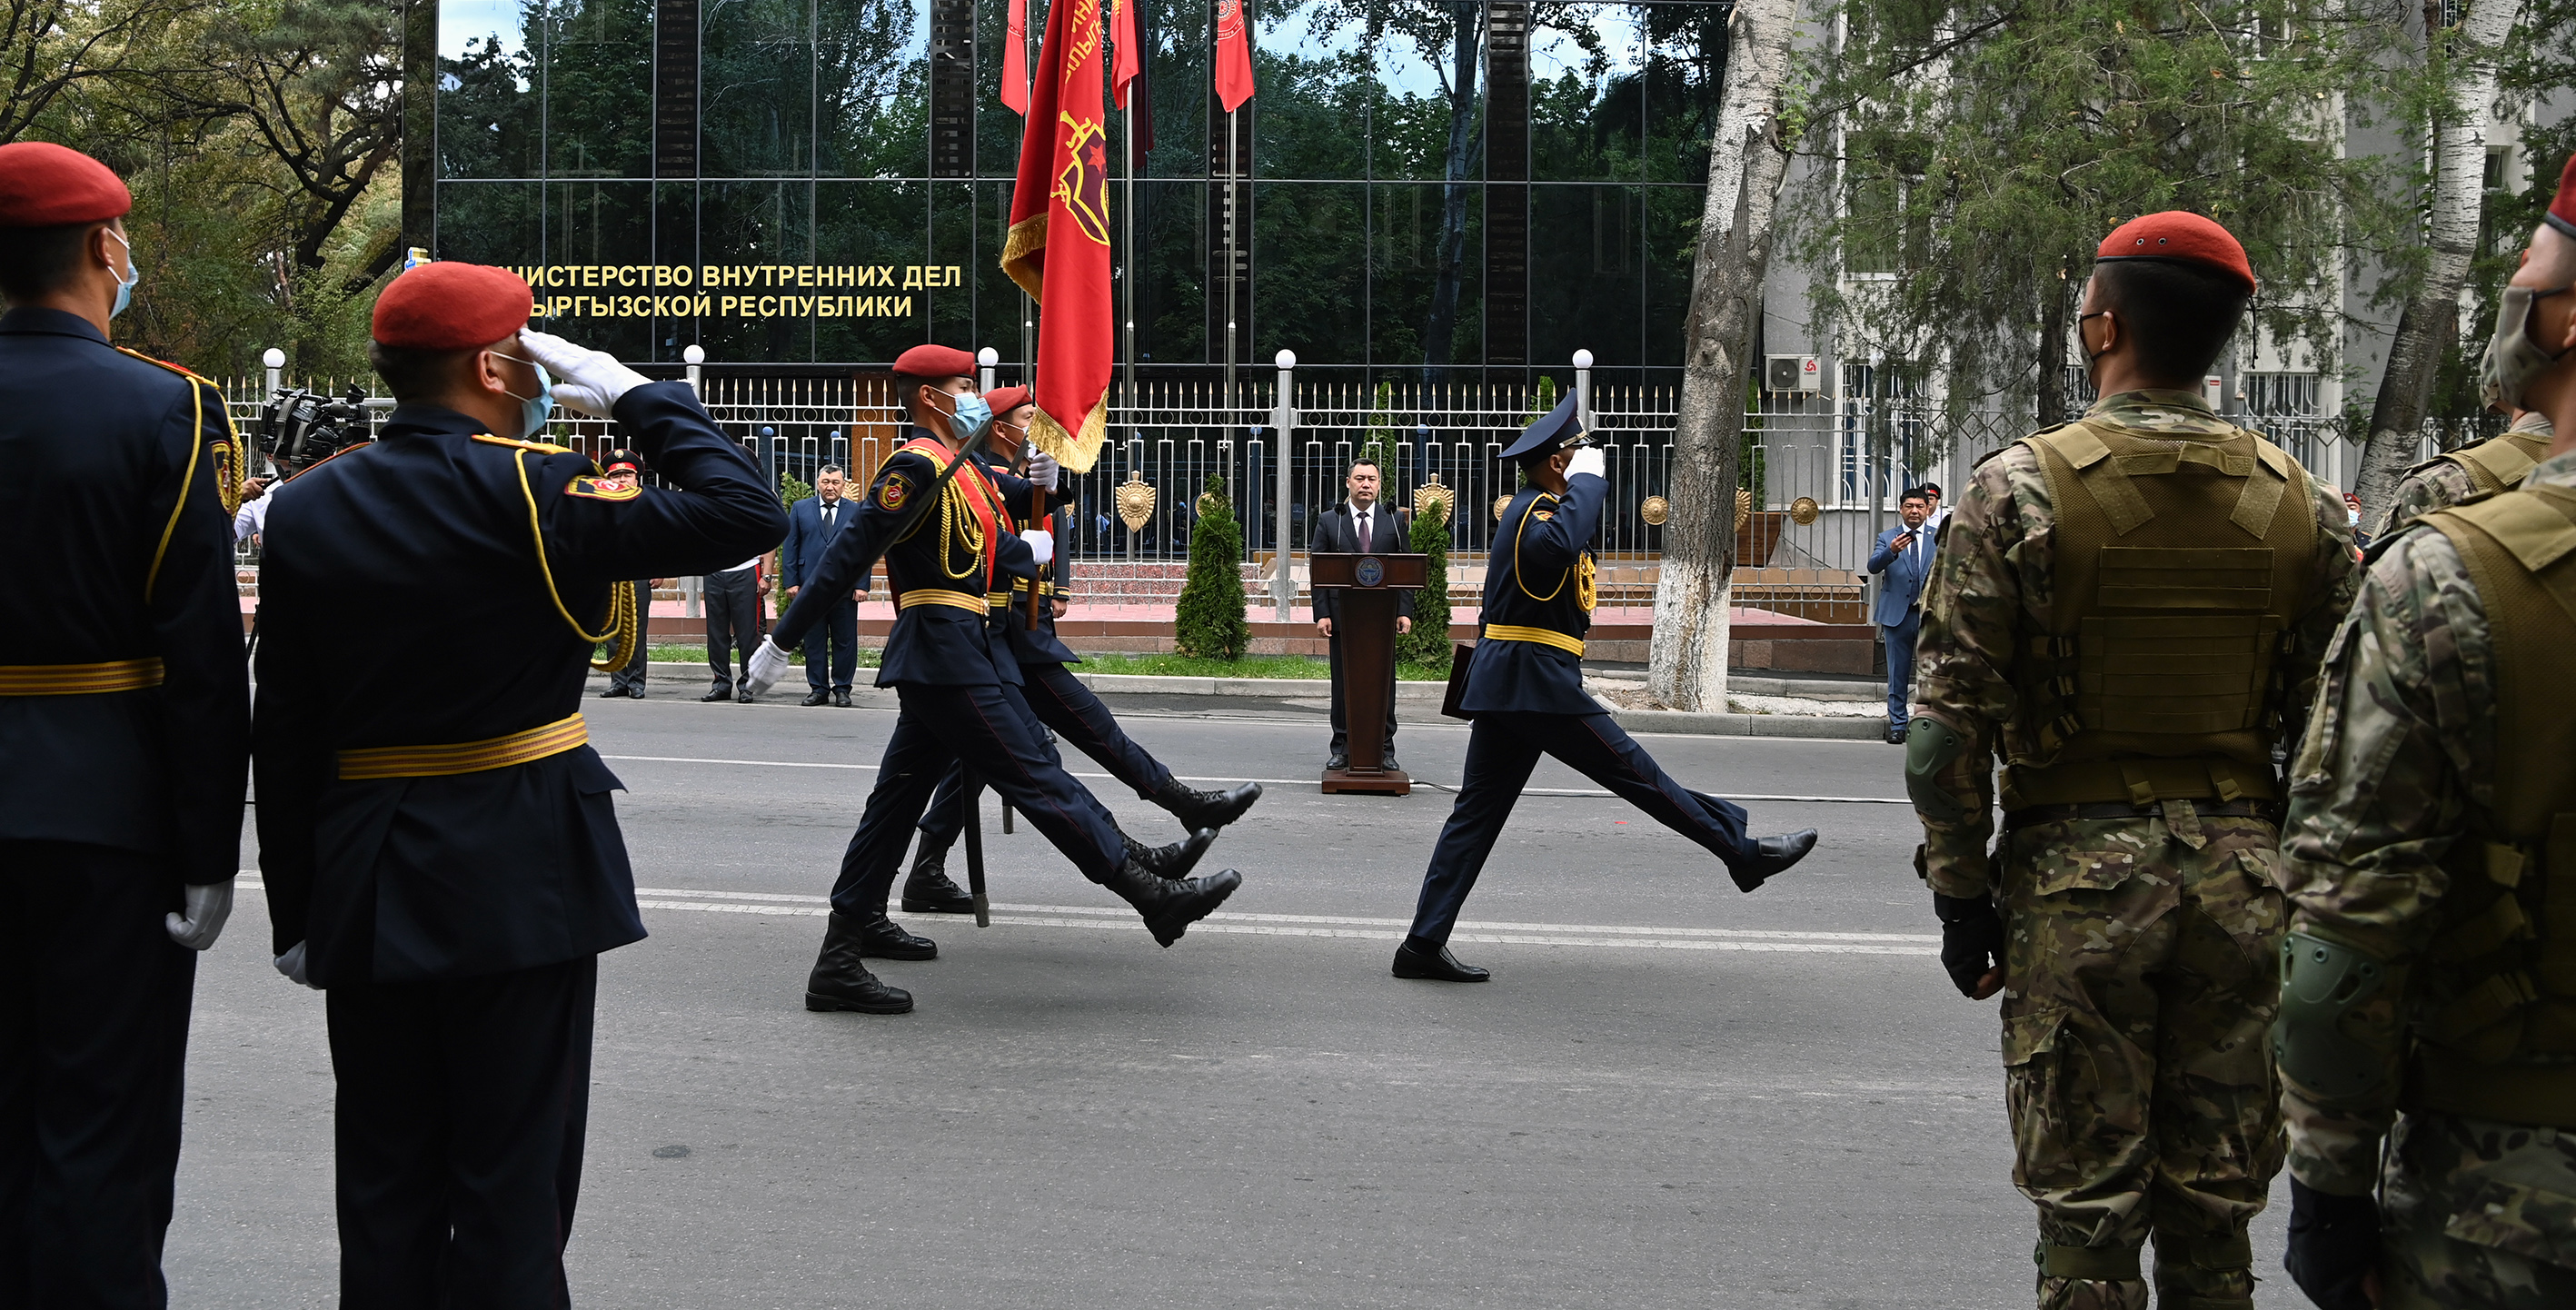 Бишкекте ИИМ Ички аскерлеринин 80 жылдыгы белгиленүүдө